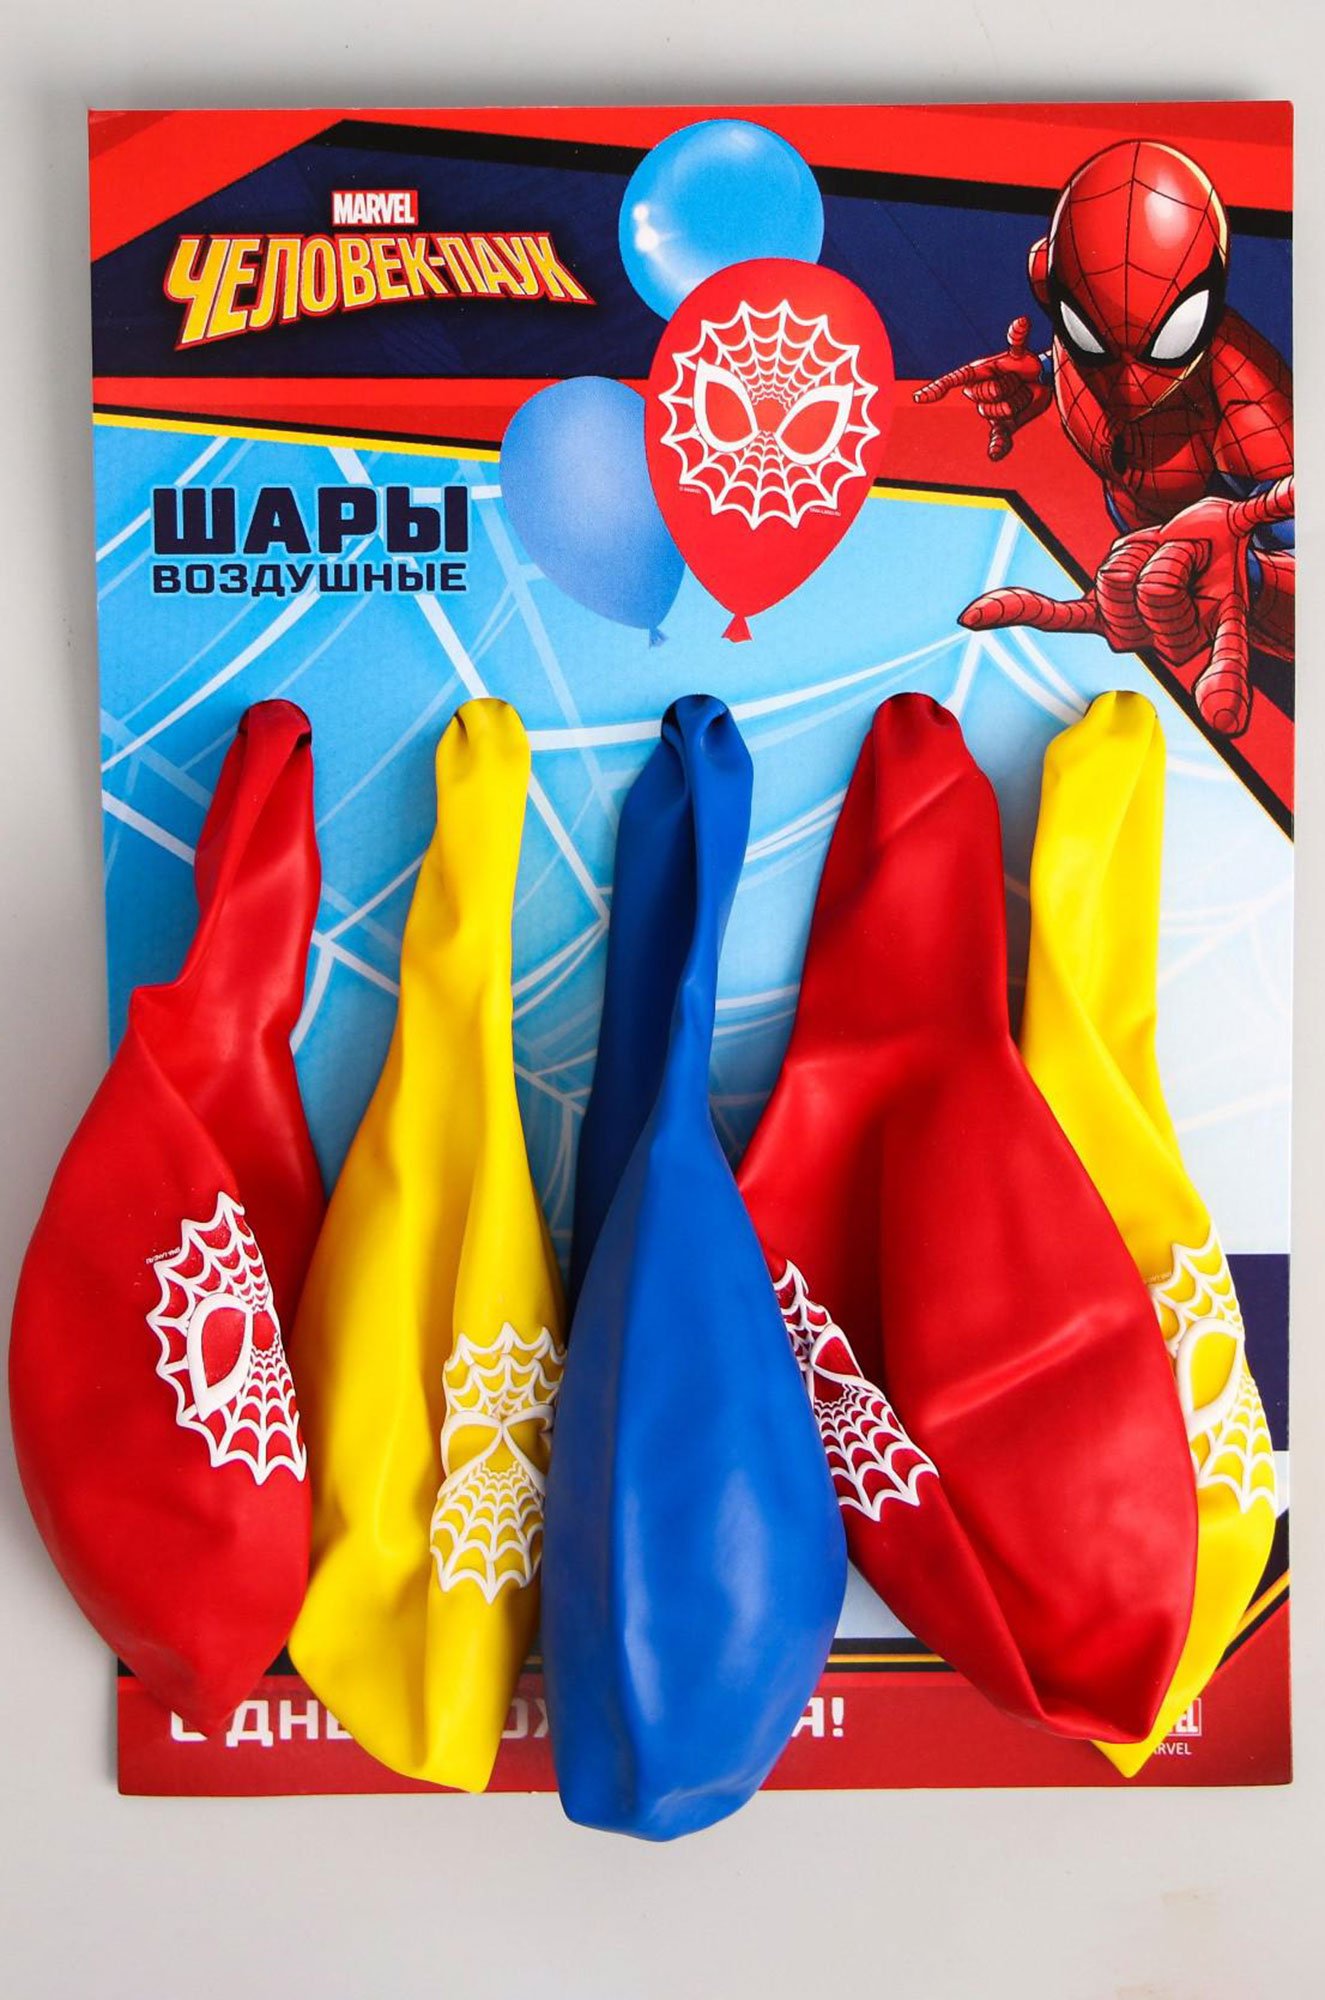 Набор воздушных шаров Человек-паук 5 шт. Marvel